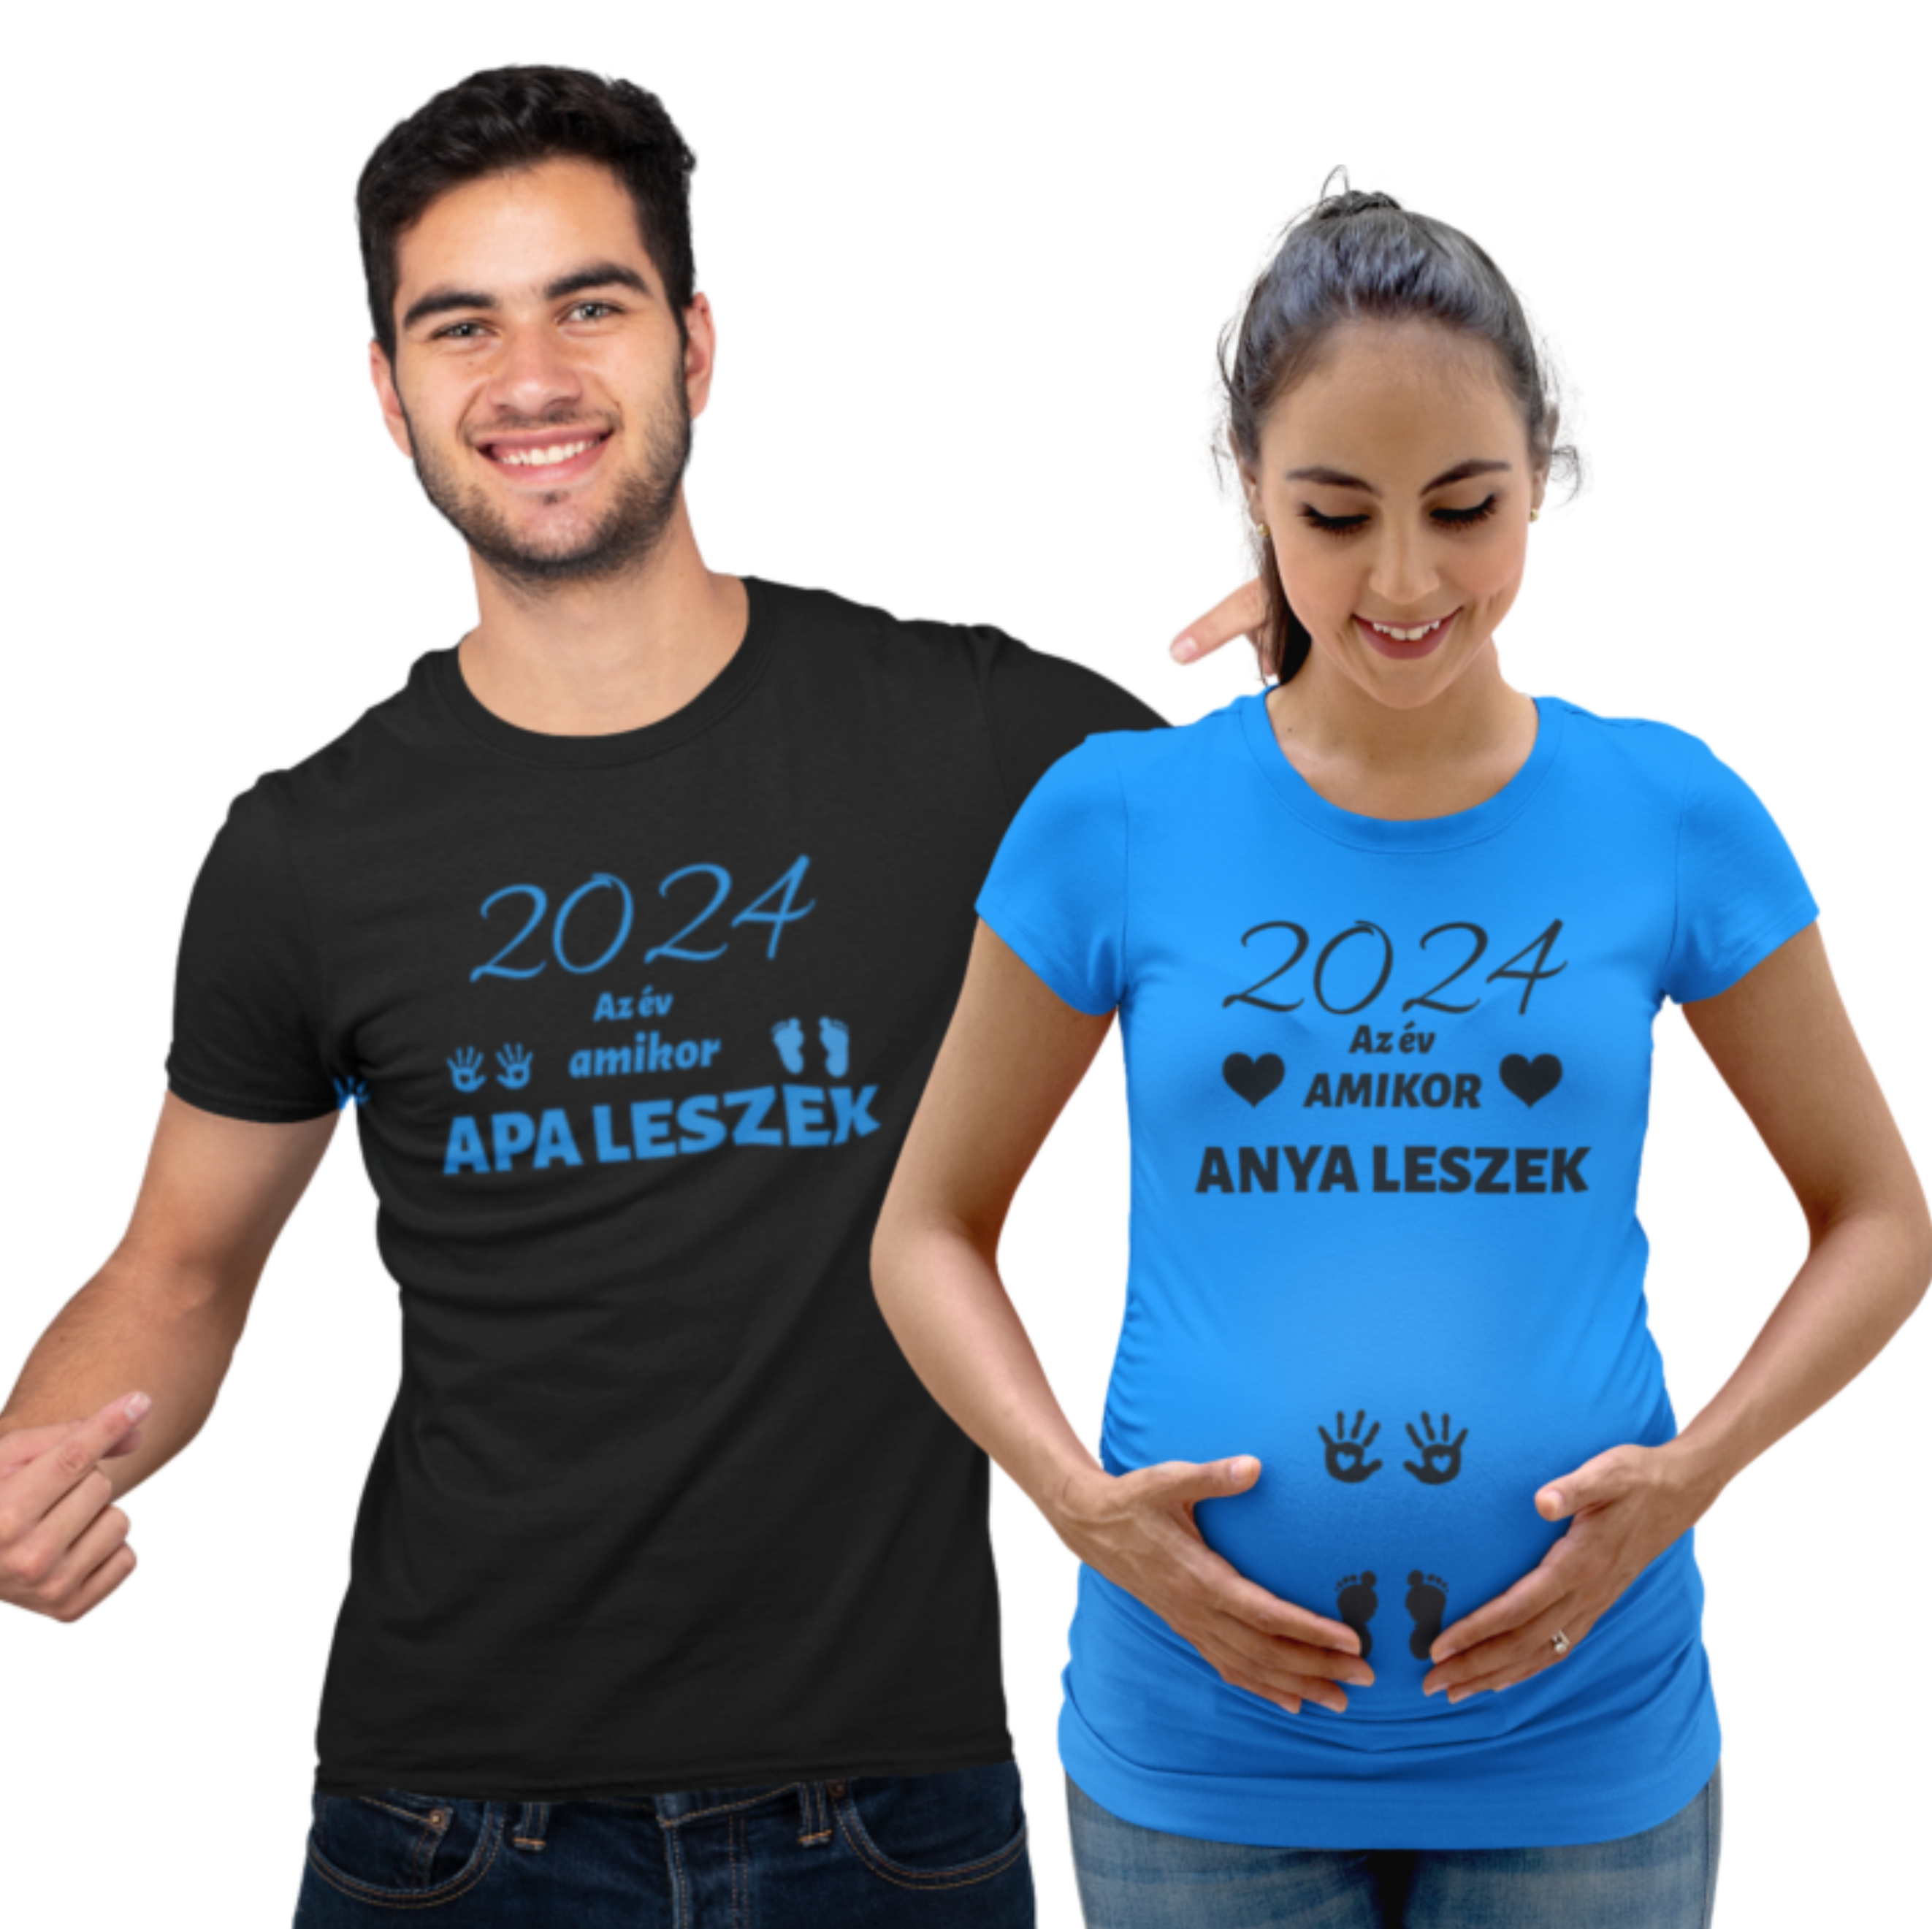 2024 az év amikor anya leszek/2024 az év amikor apa leszek kék/fekete(2 db póló)